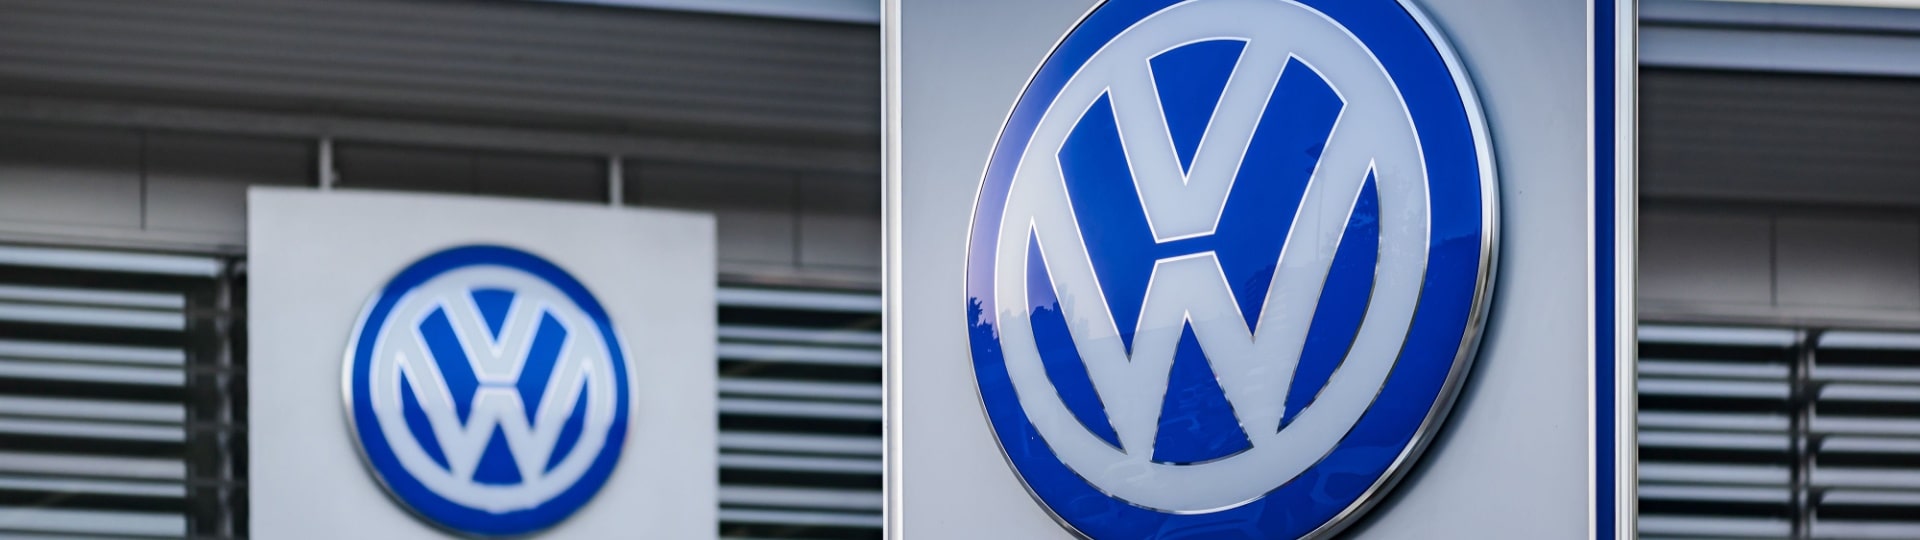 Volkswagen loni zvýšil čistý zisk o 13 procent